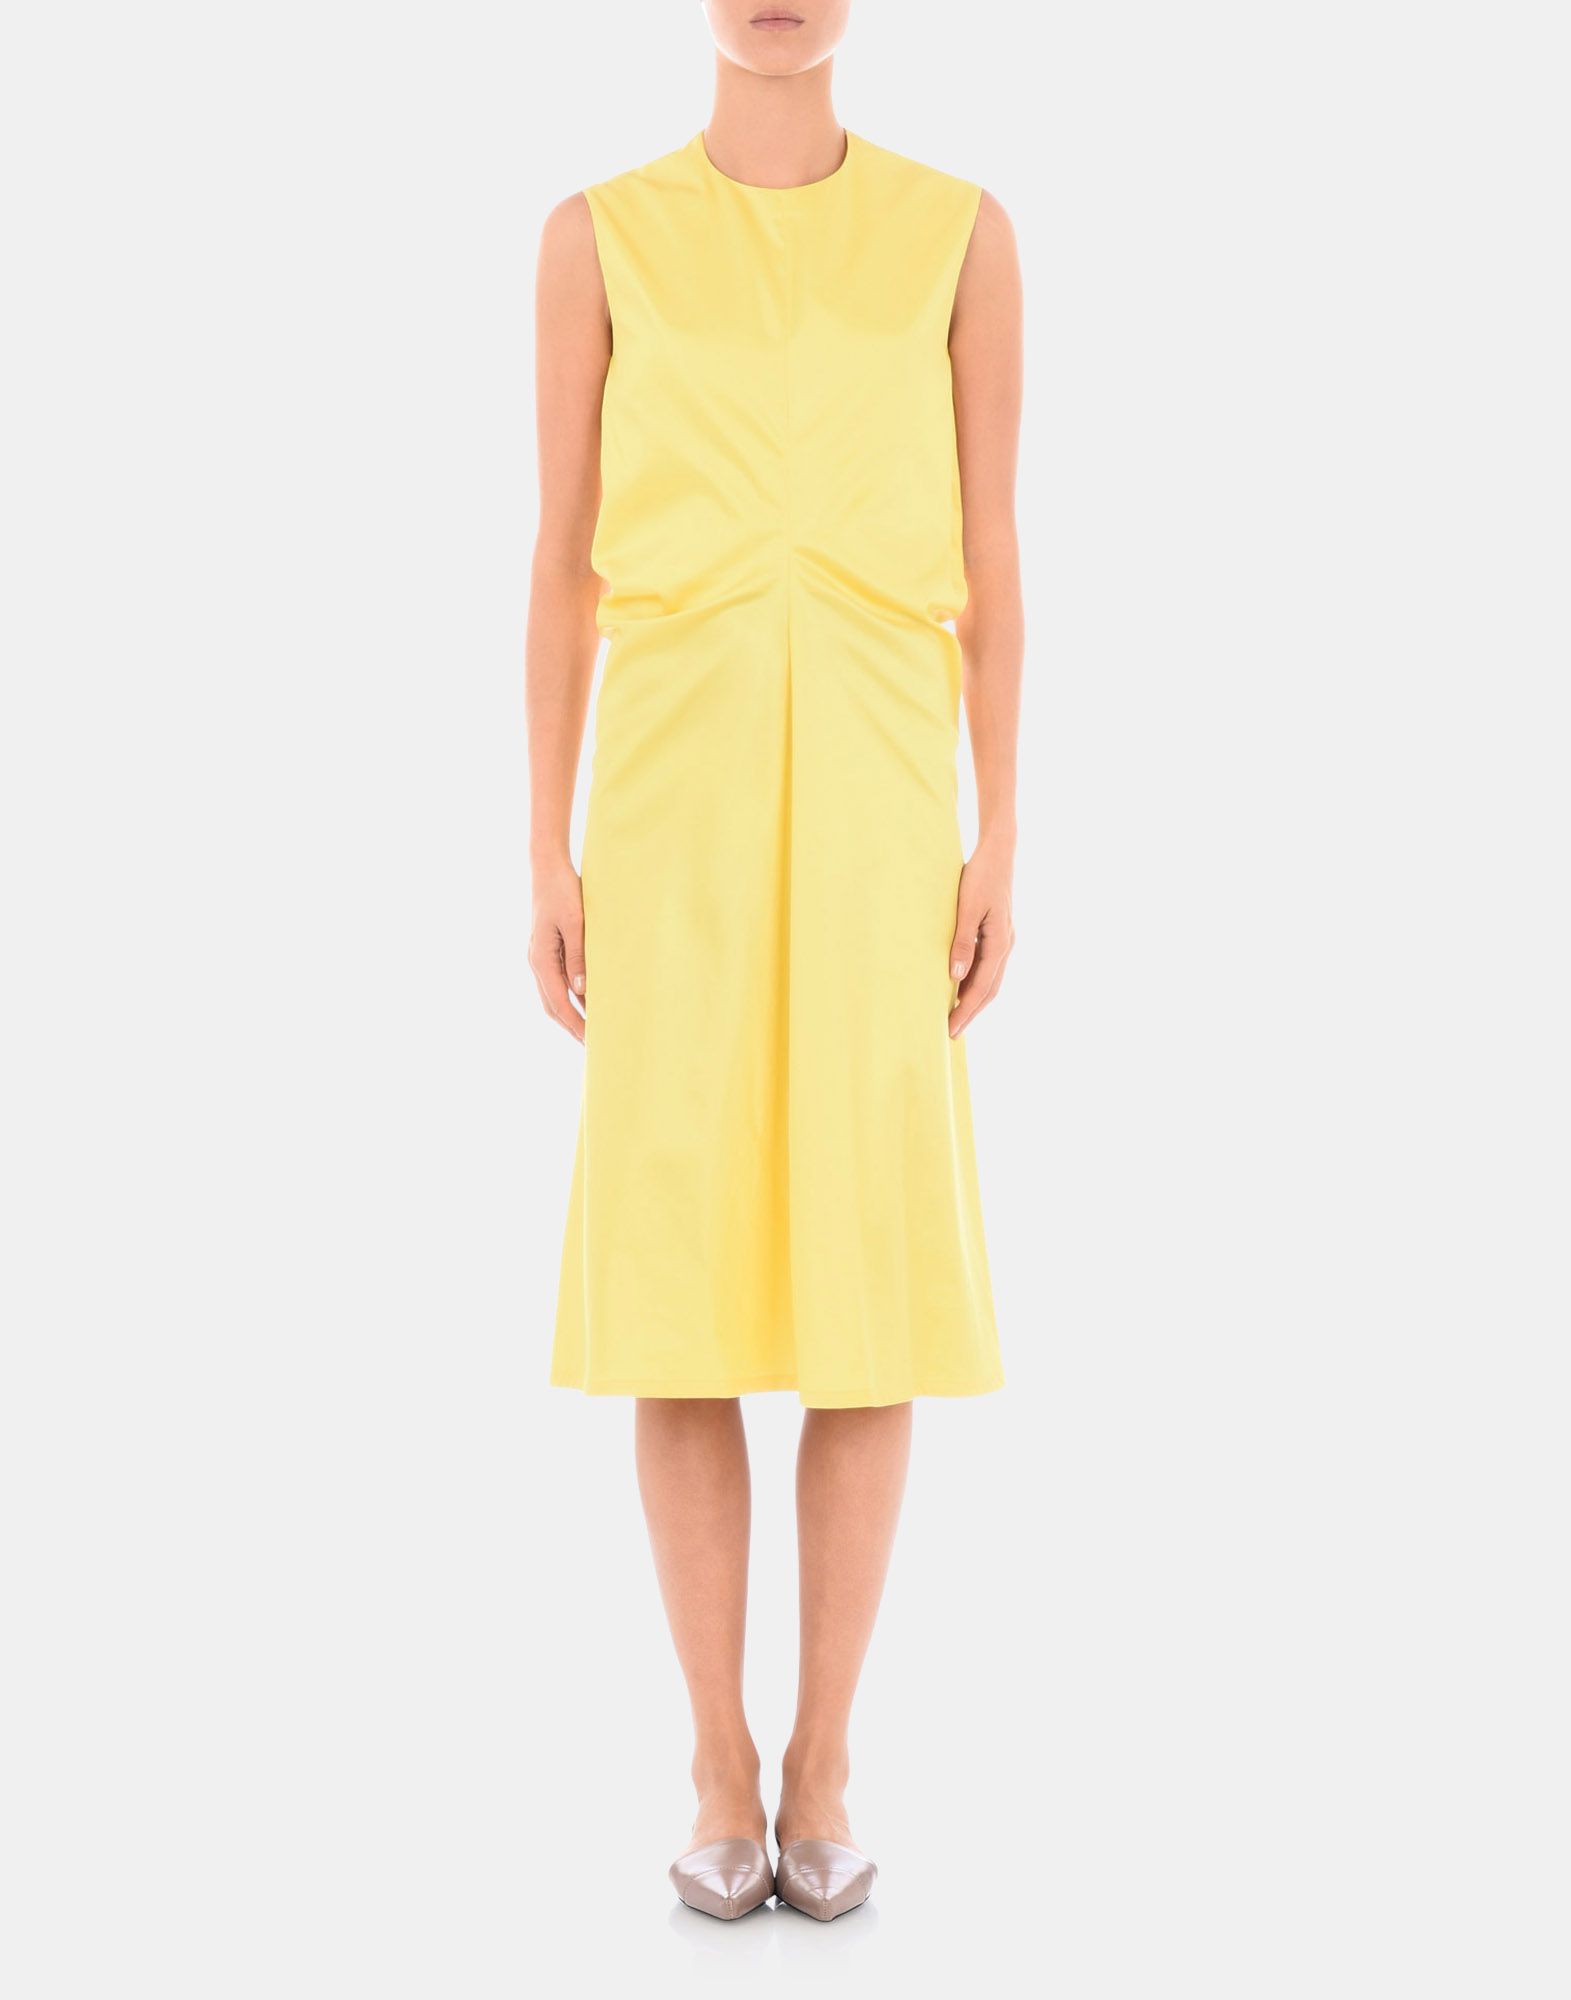 Dress Women - Dresses Women on Jil Sander Online Store